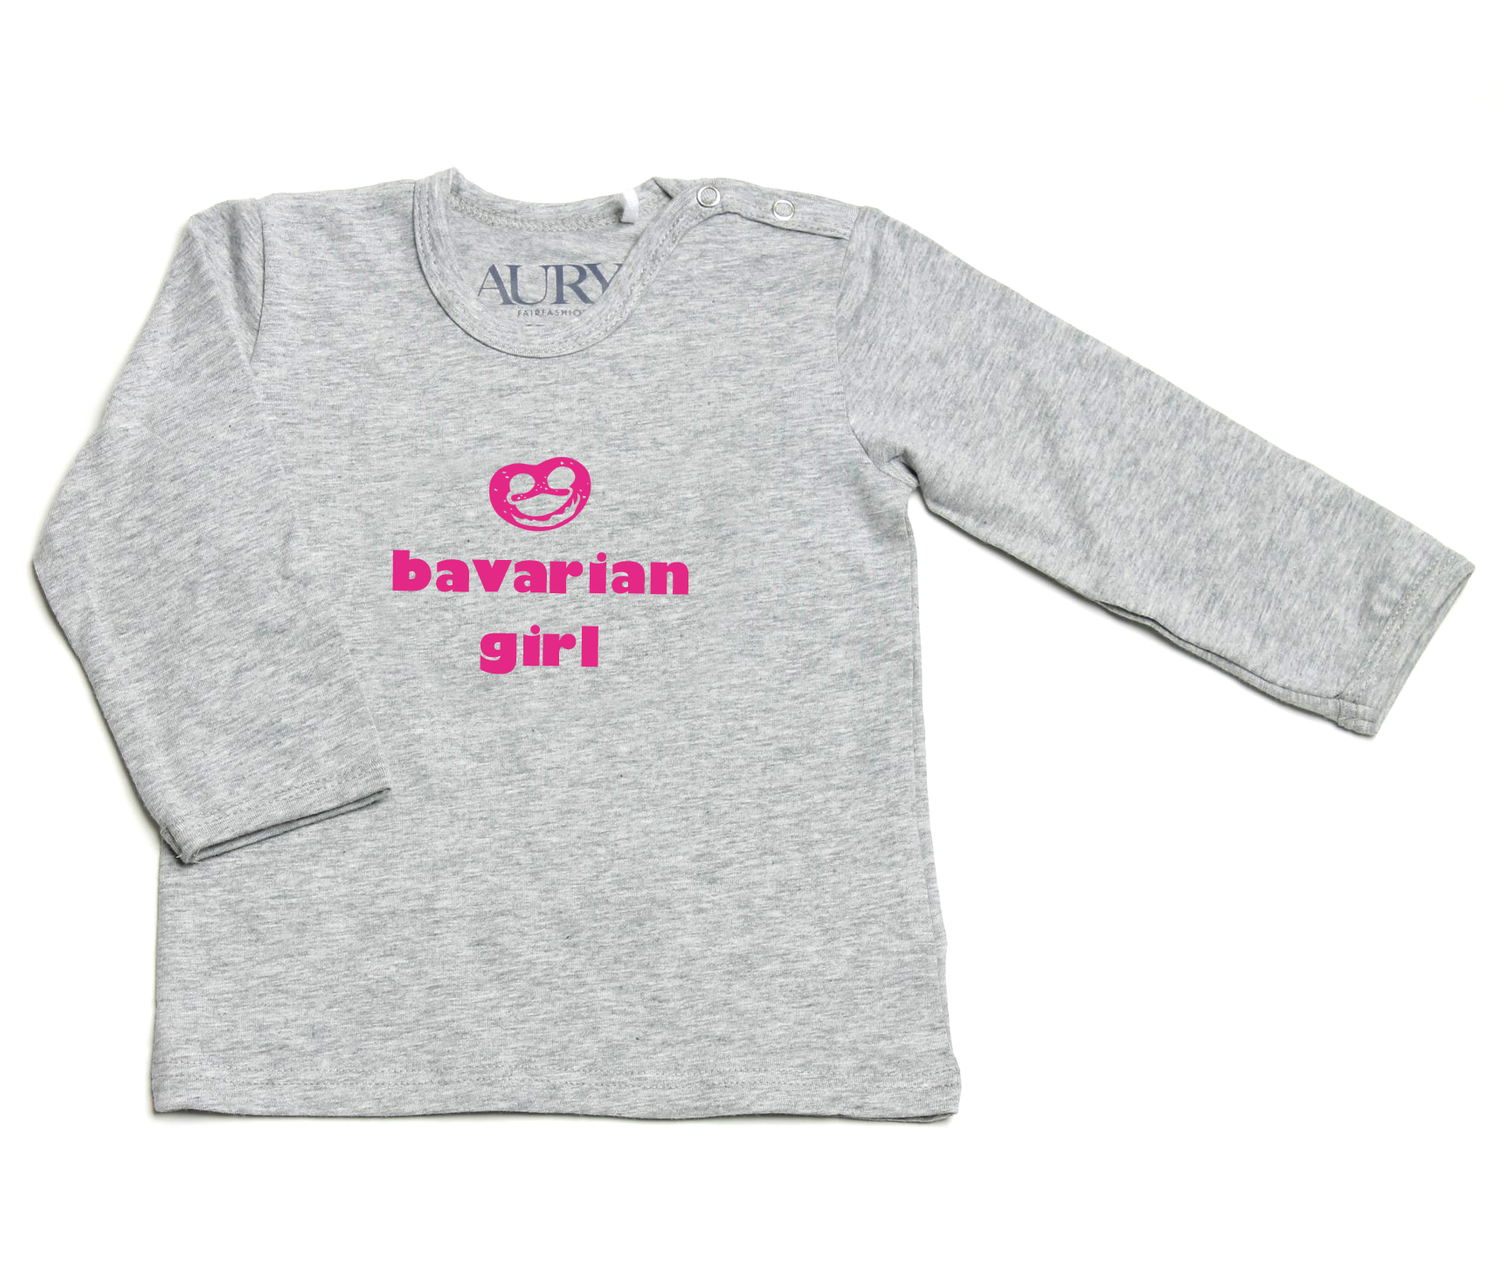 Auryn - Shirt grau Bavarian girl pink - AURYN Shop